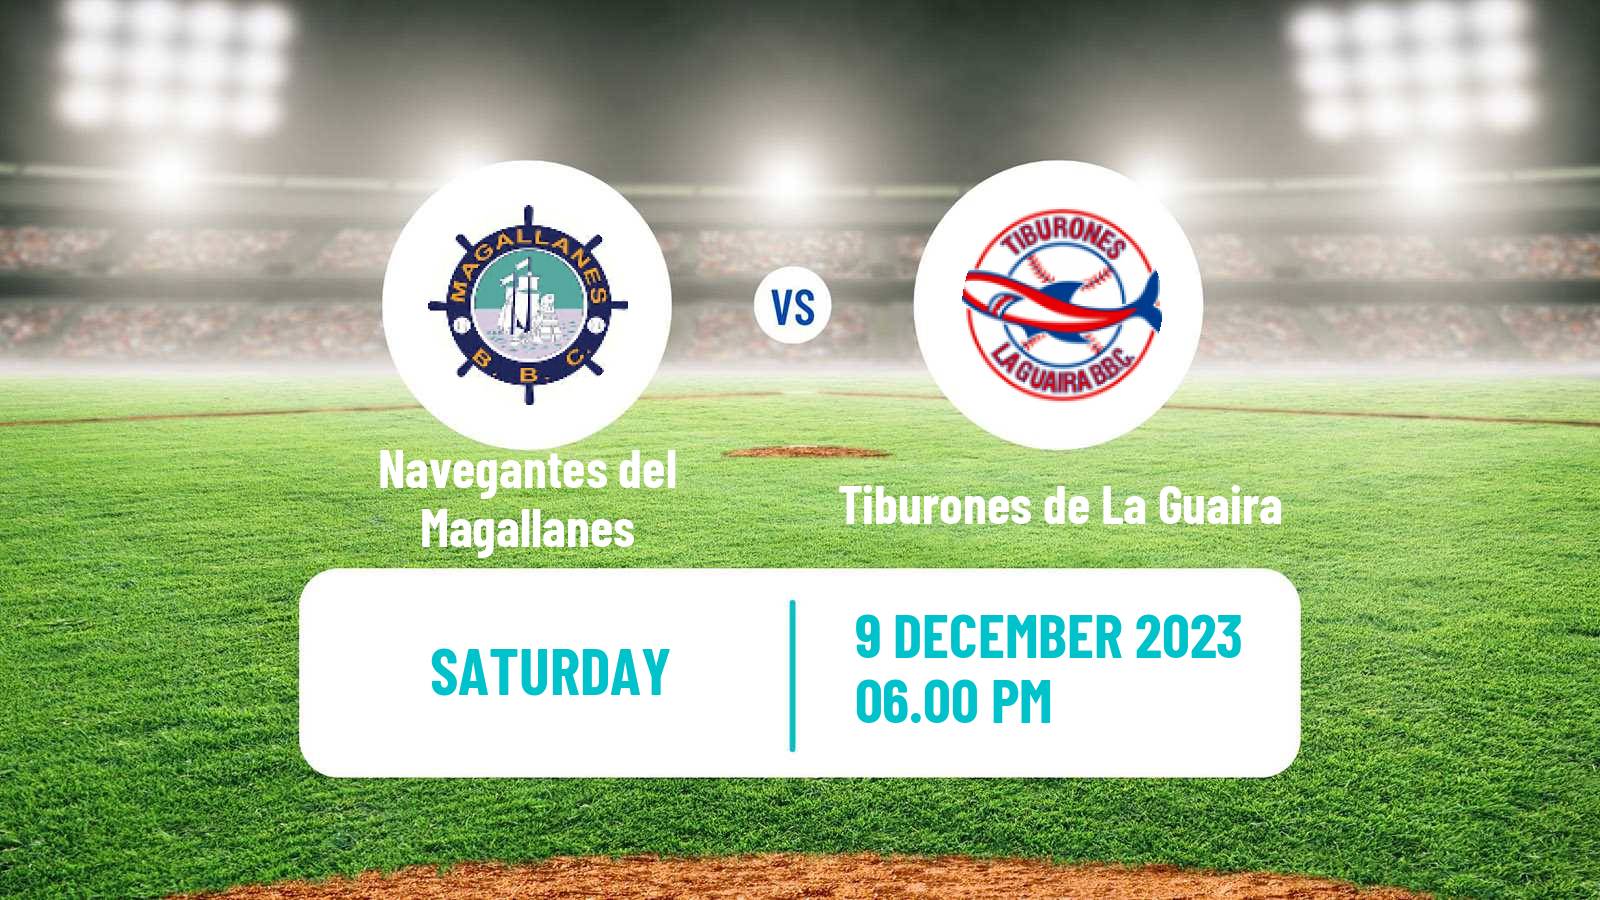 Baseball Venezuelan LVBP Navegantes del Magallanes - Tiburones de La Guaira